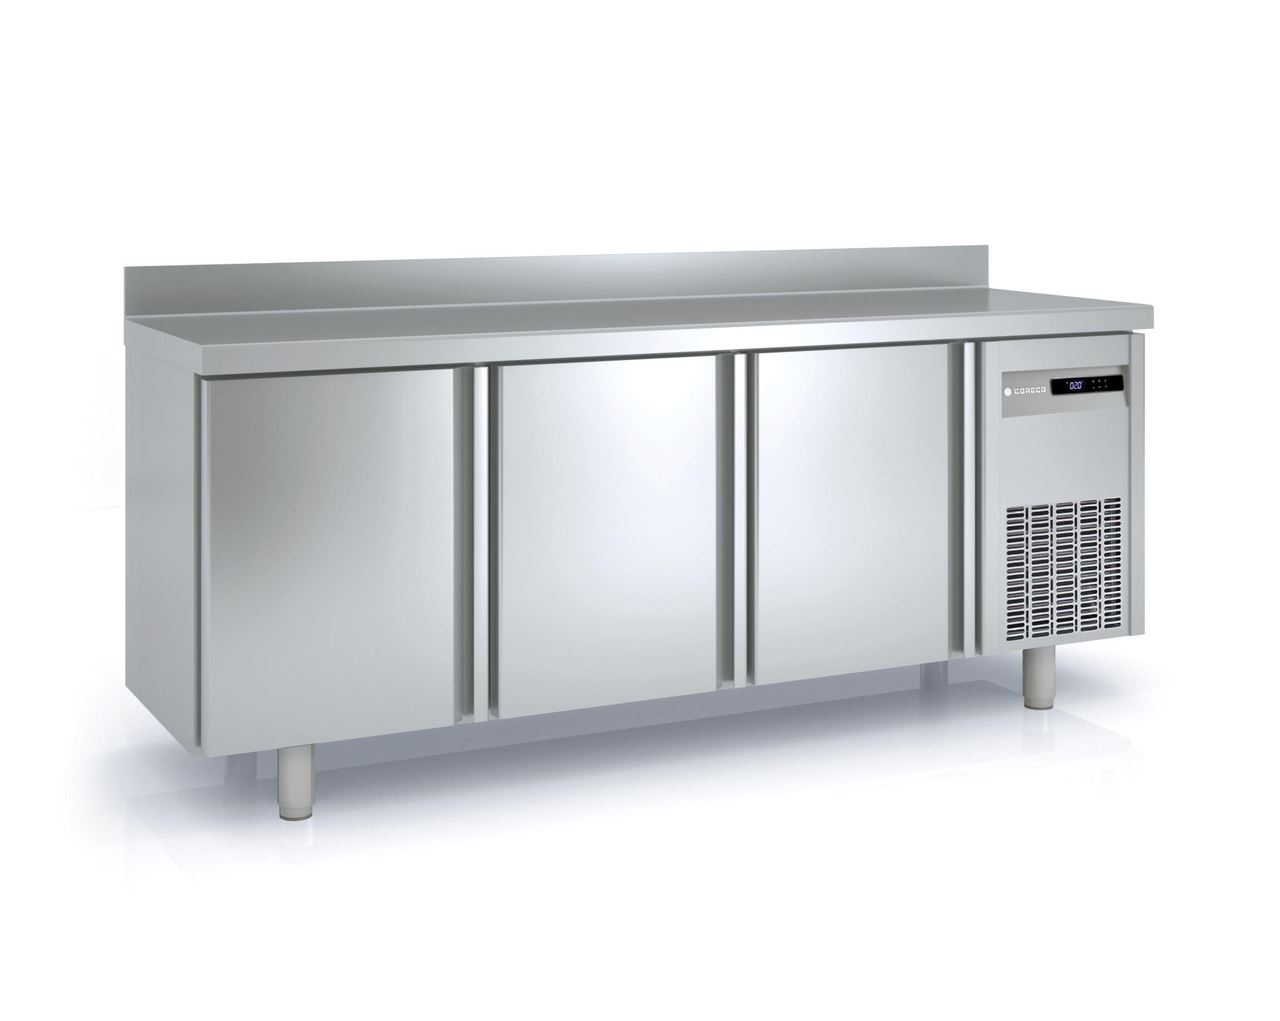 Table réfrigérée SNACK positive 3 portes pleines inox AISI-304 410L - Coreco - MRS-200